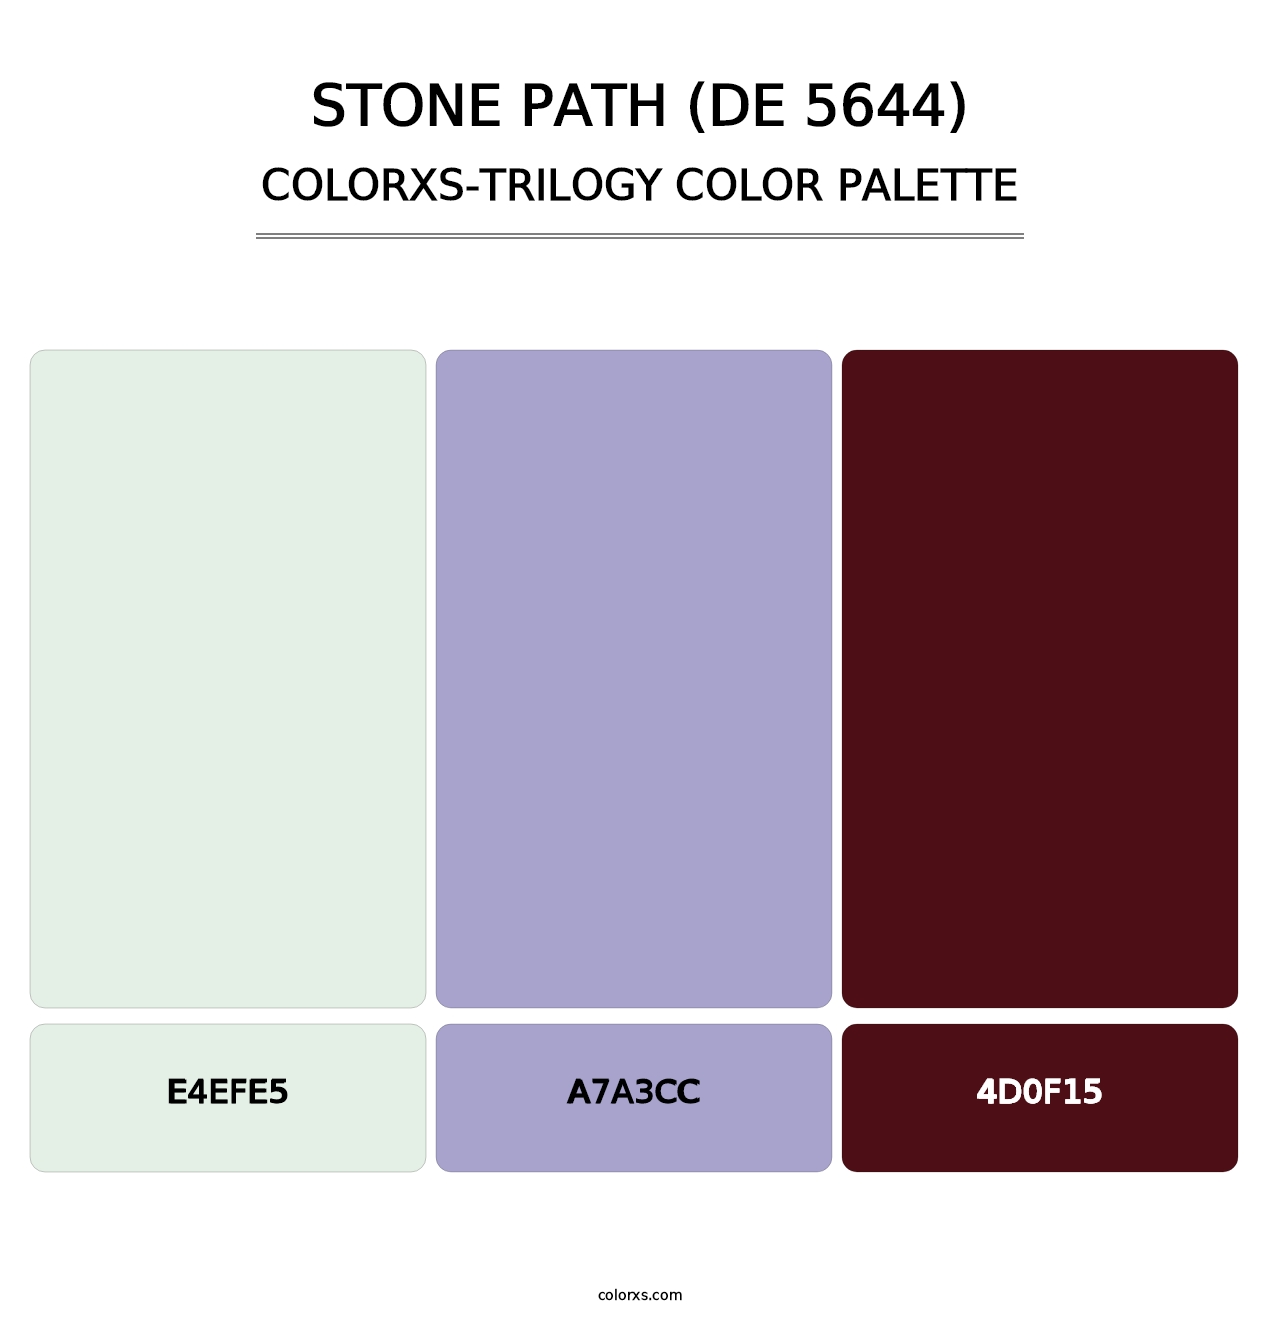 Stone Path (DE 5644) - Colorxs Trilogy Palette